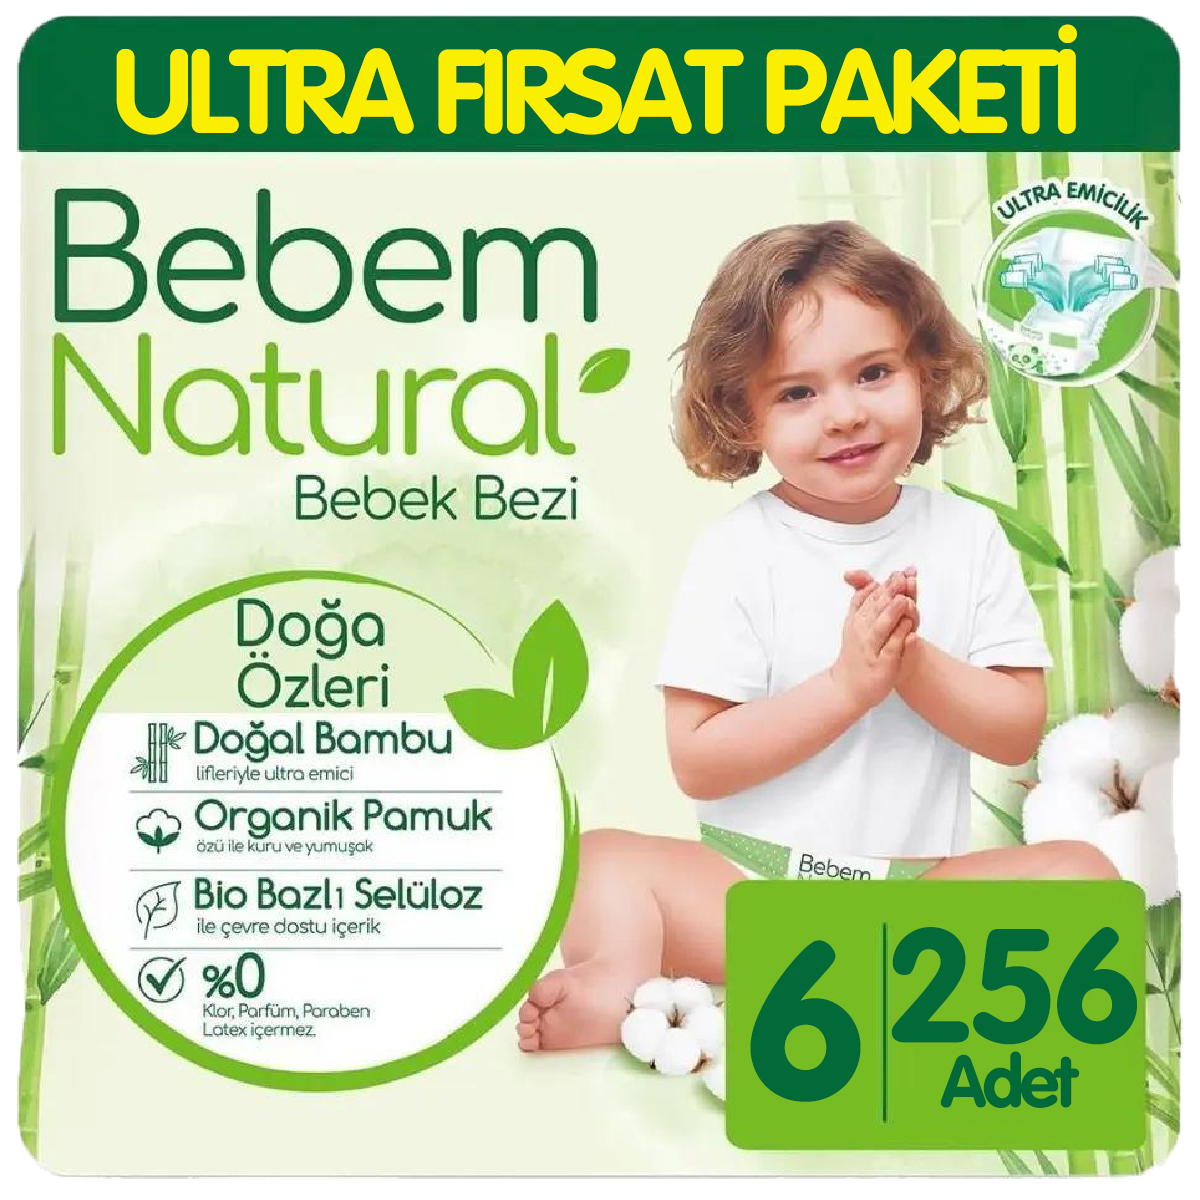 Bebem Natural Bebek Bezi Ultra Fırsat Paketi 6 Beden 64x4 256 Adet